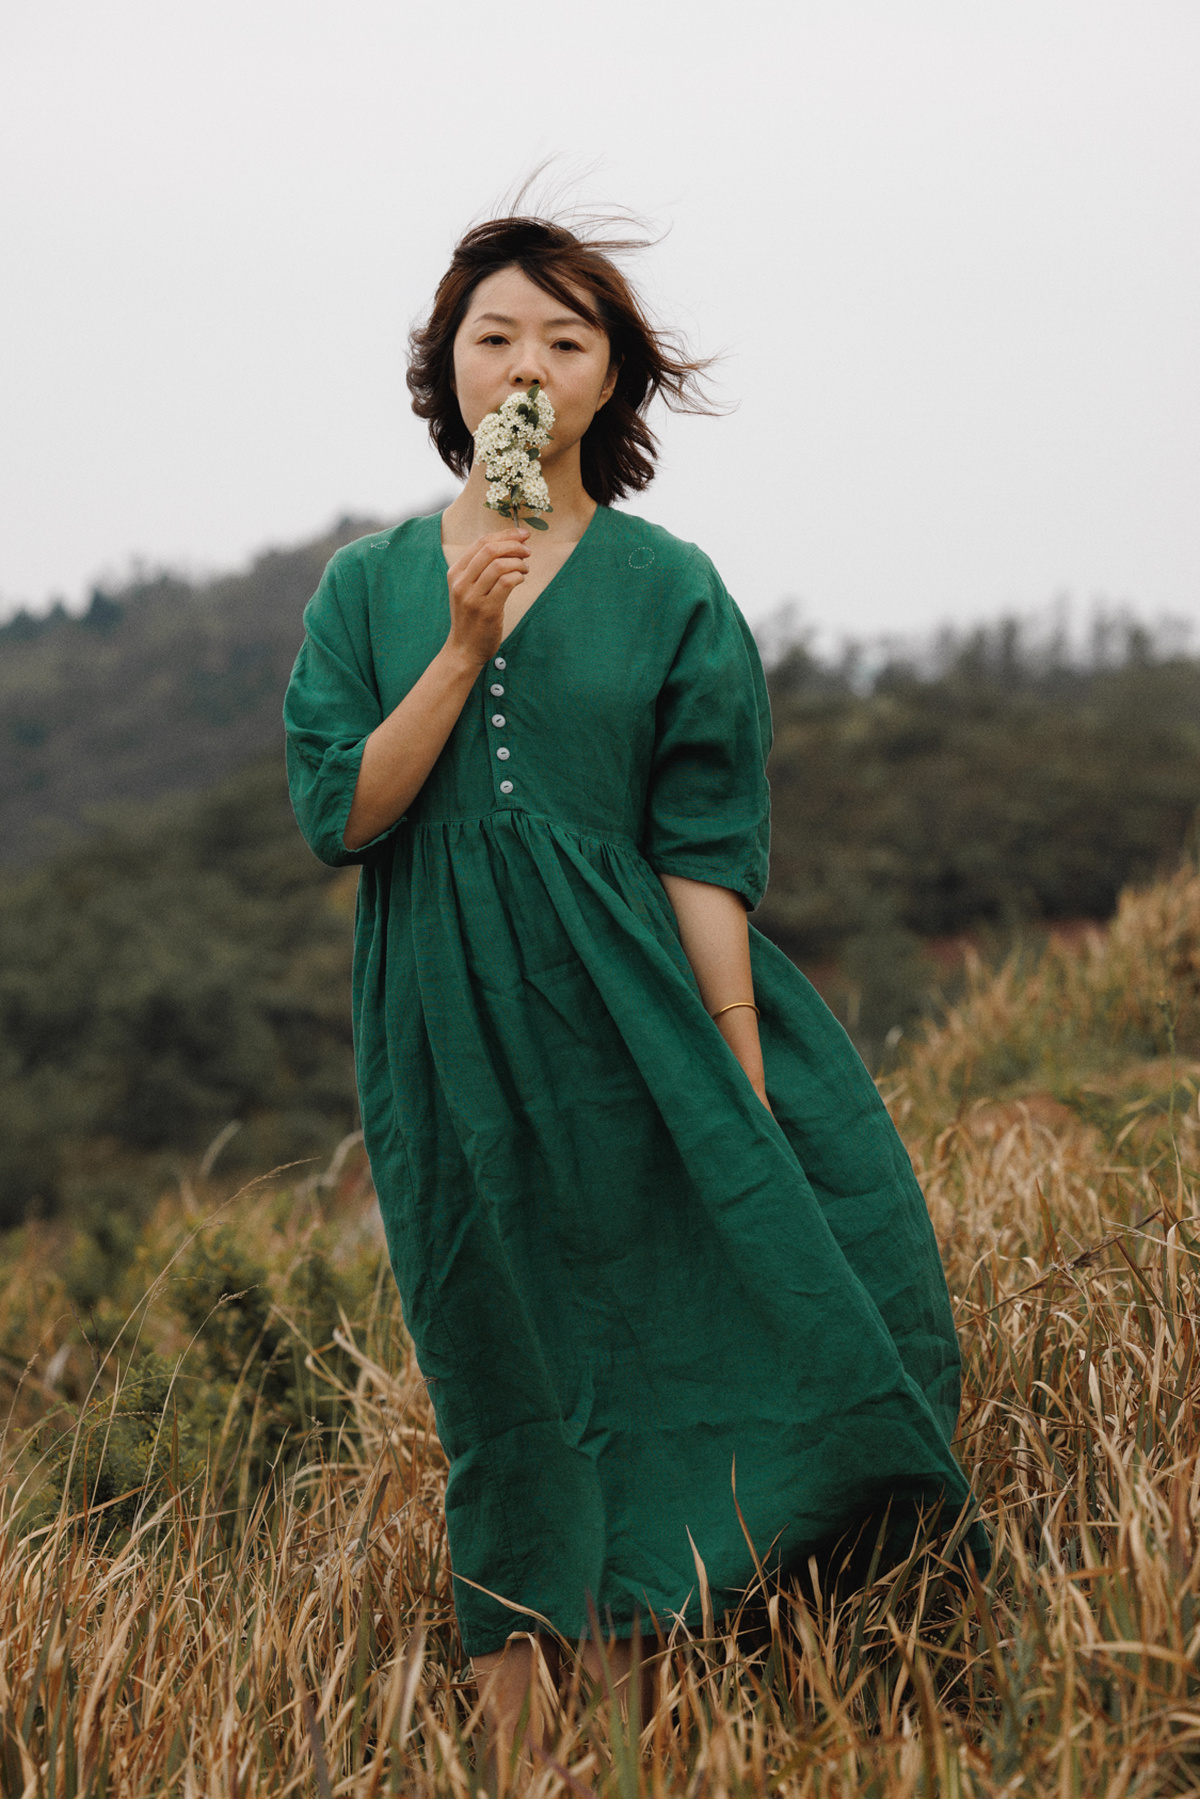 一位穿着绿色连衣裙的年轻女子正在田地里吃一朵花。